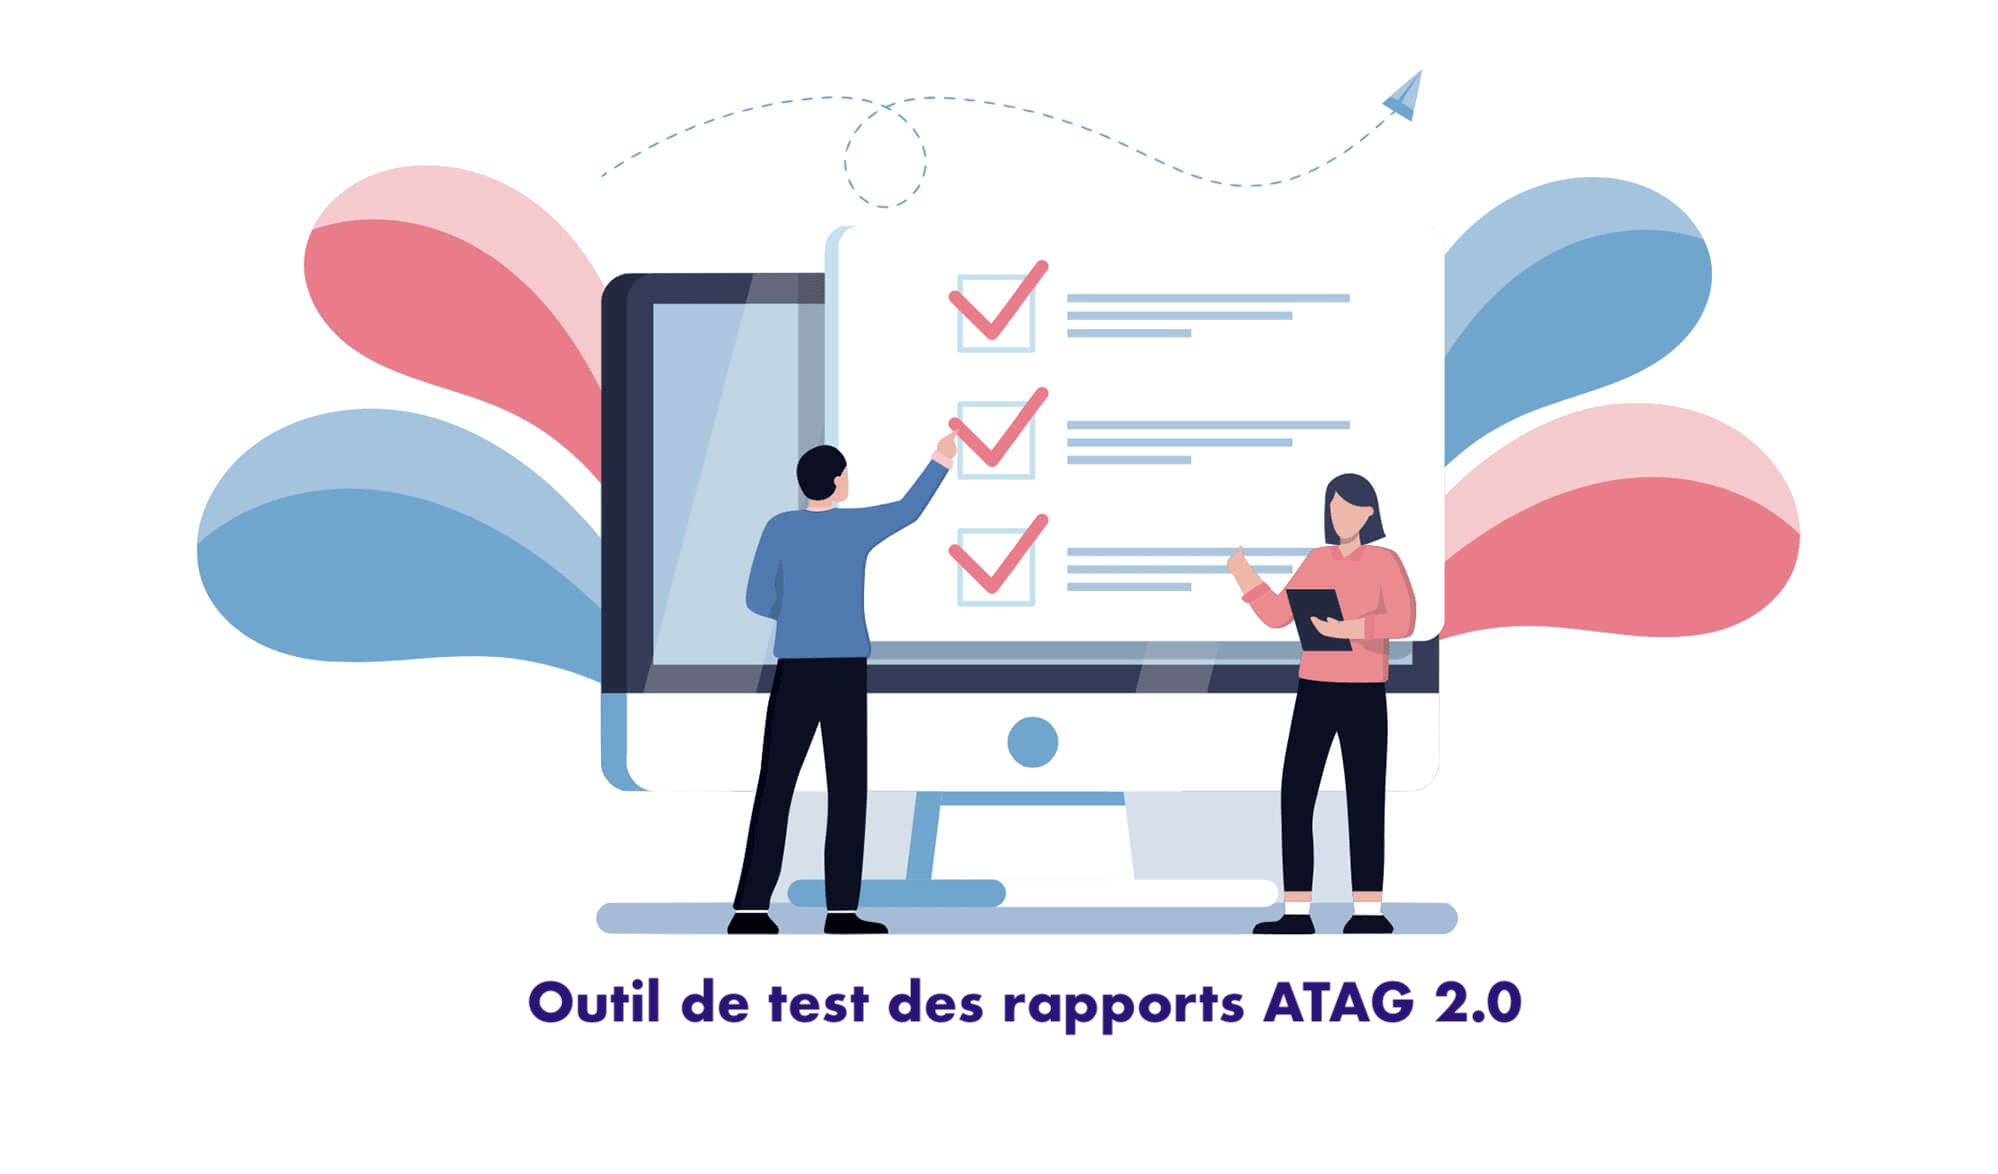 Outil de test des rapports ATAG 2.0